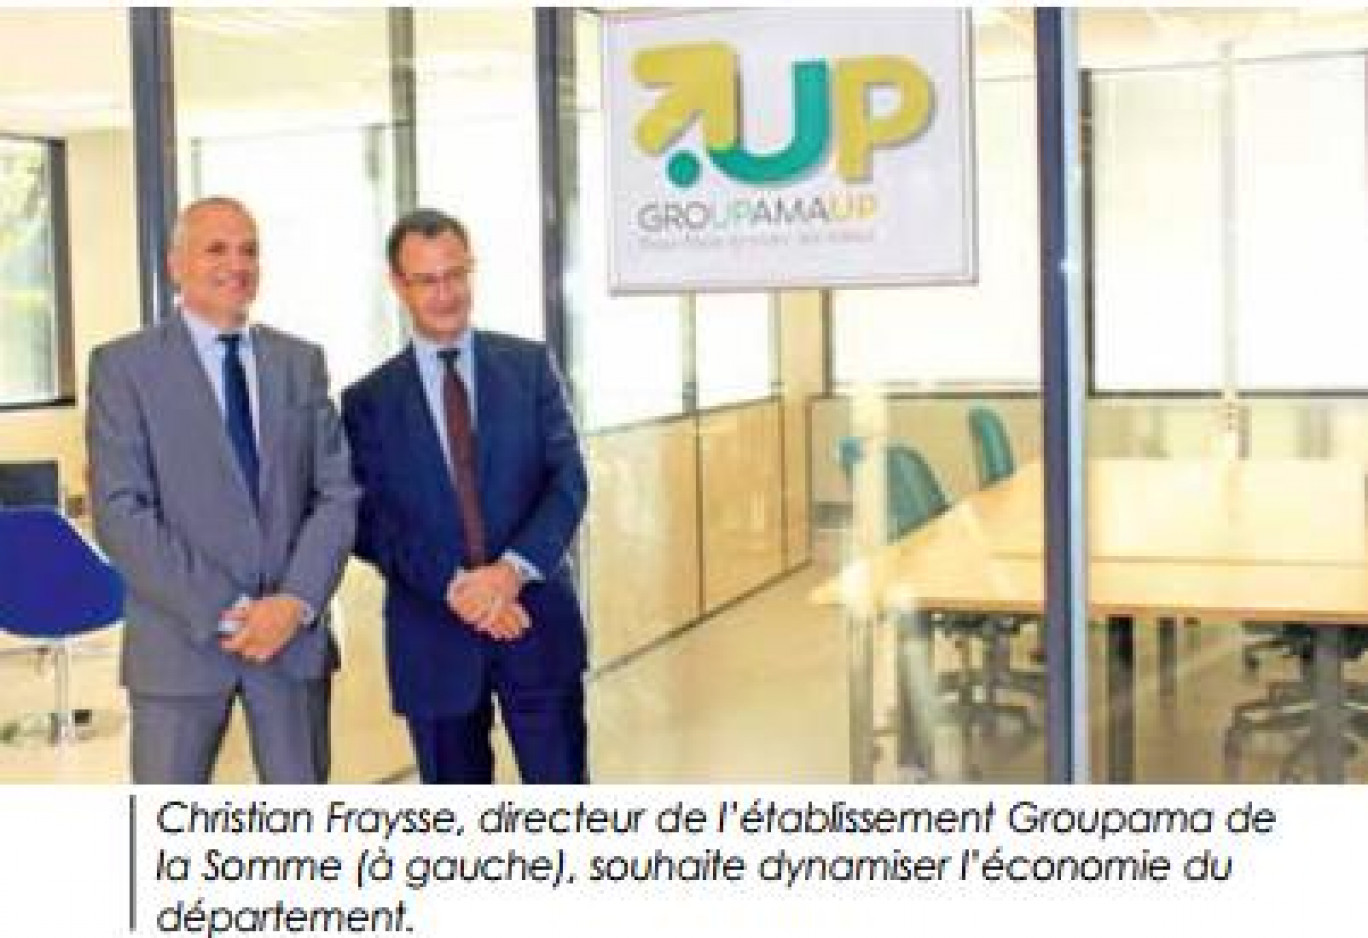 Groupama ouvre ses locaux aux start-ups